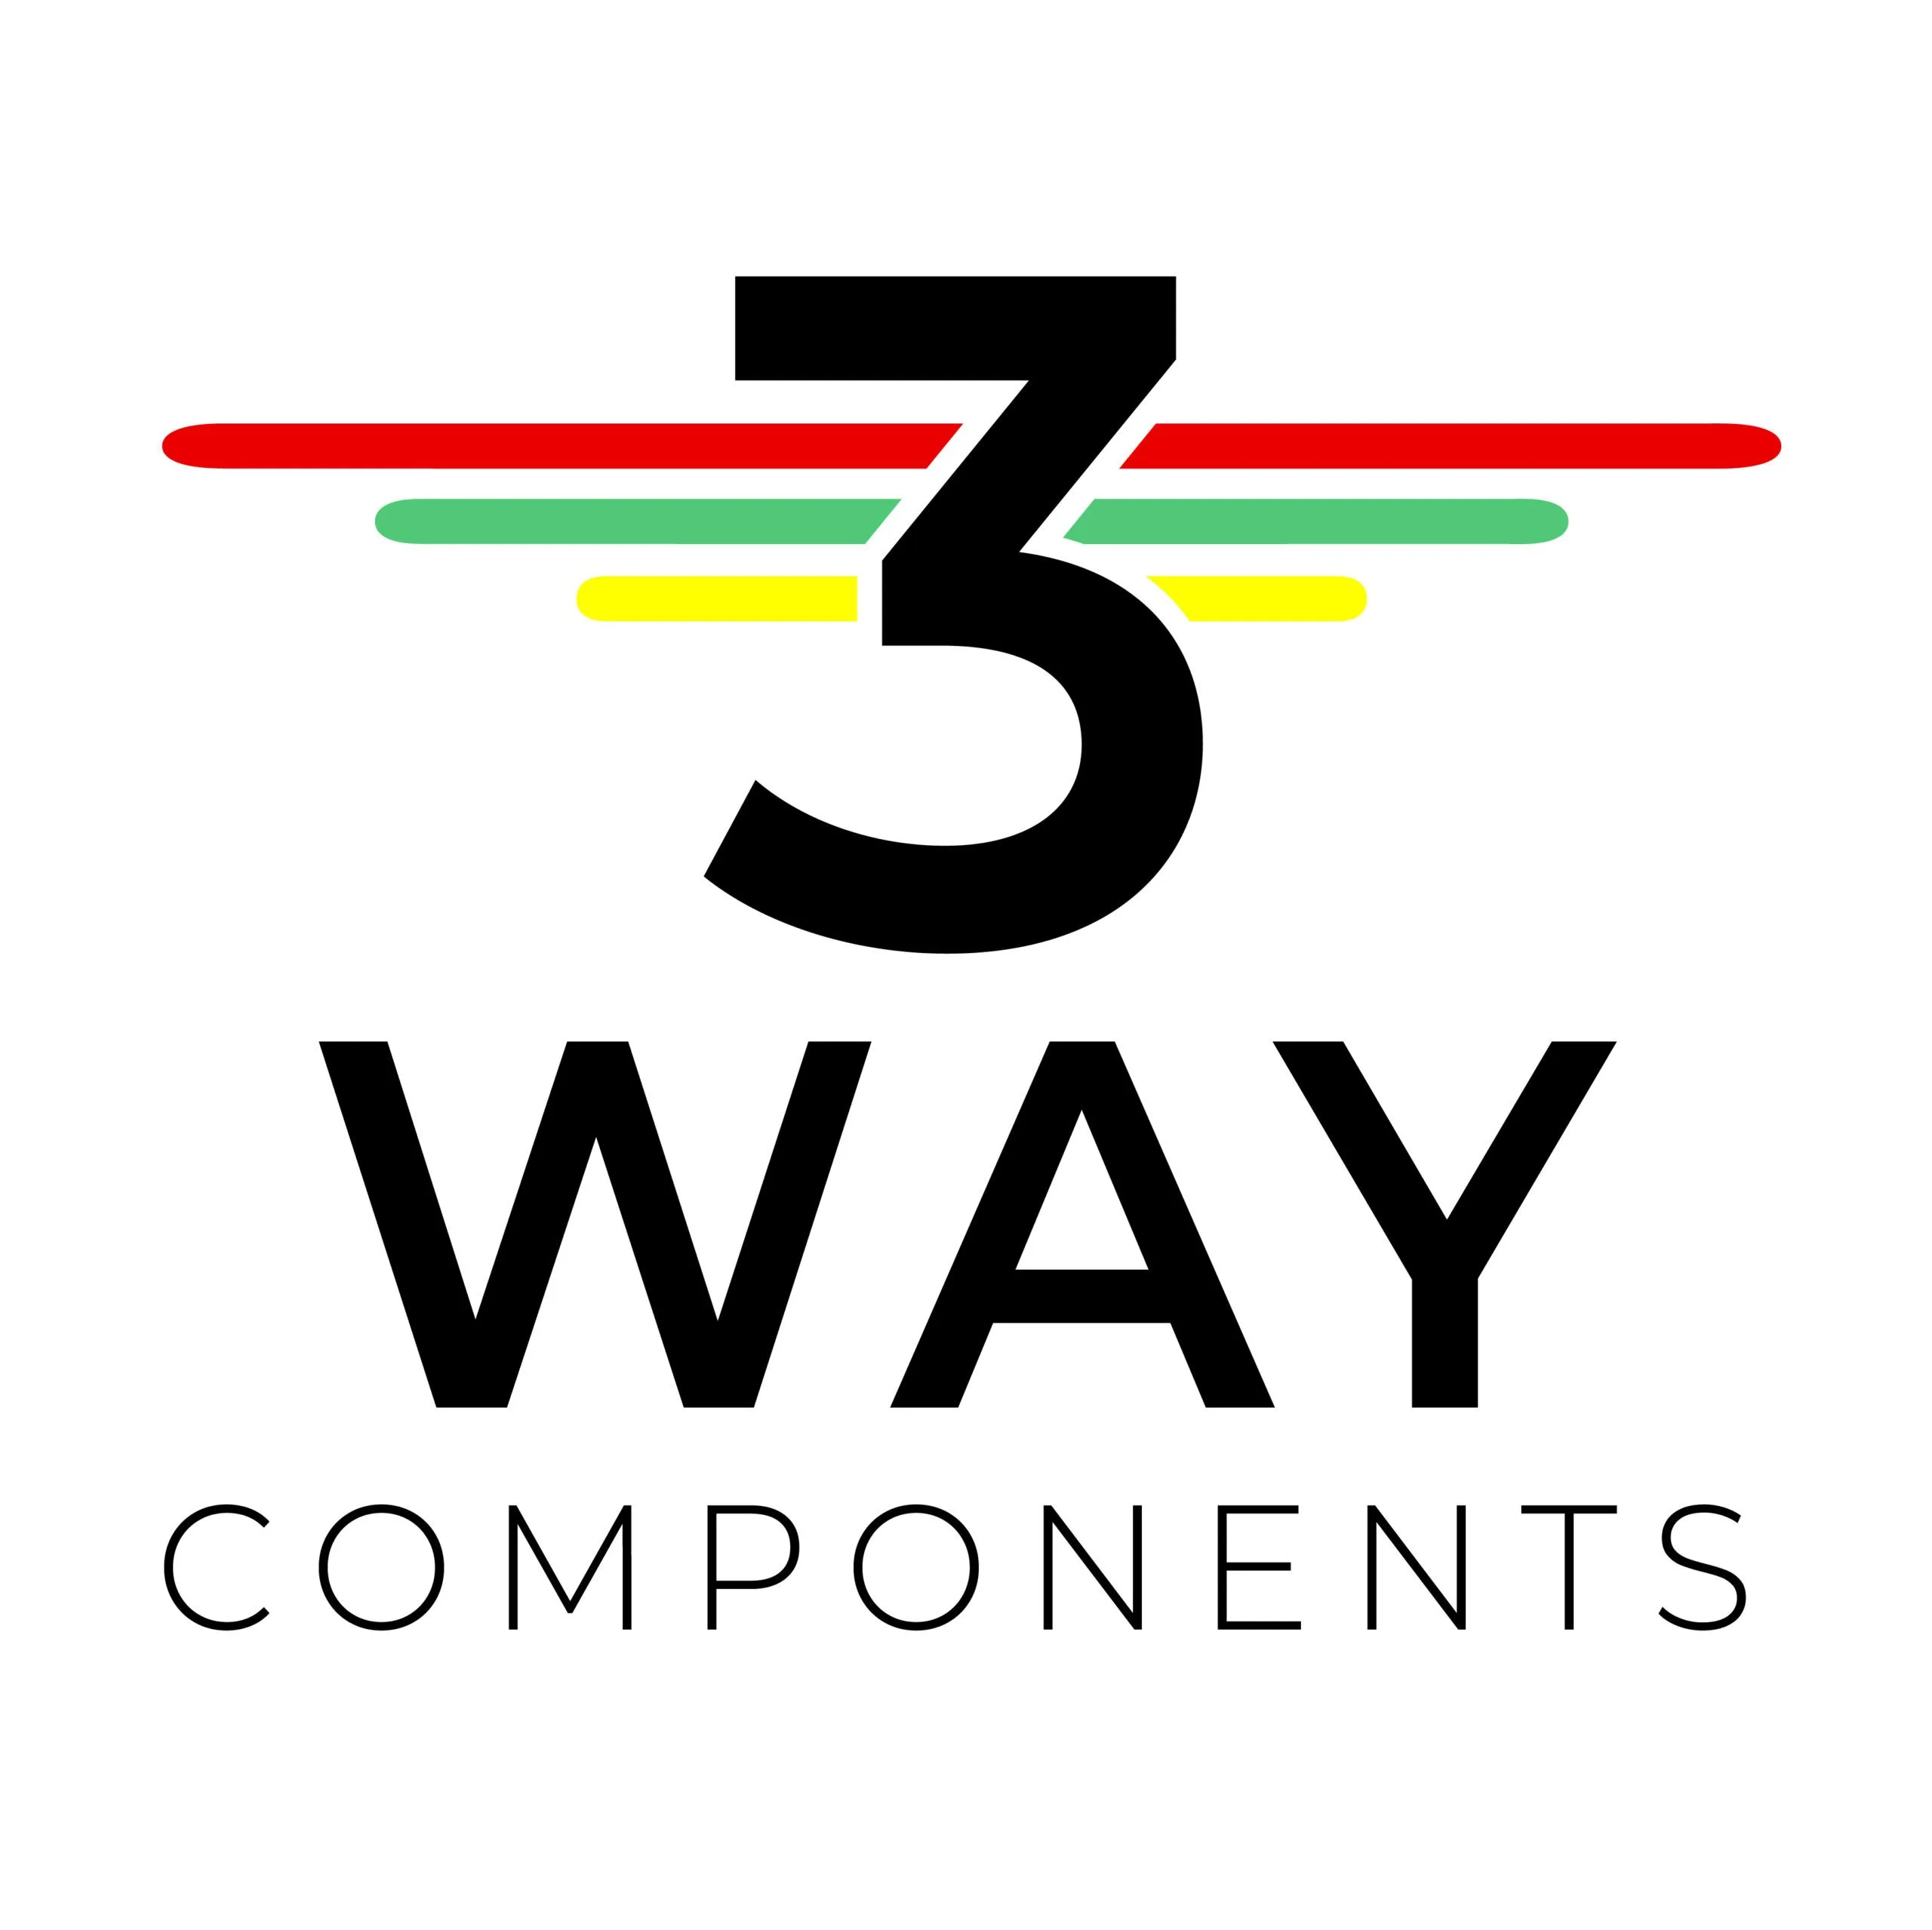 www.3waycomponents.co.uk